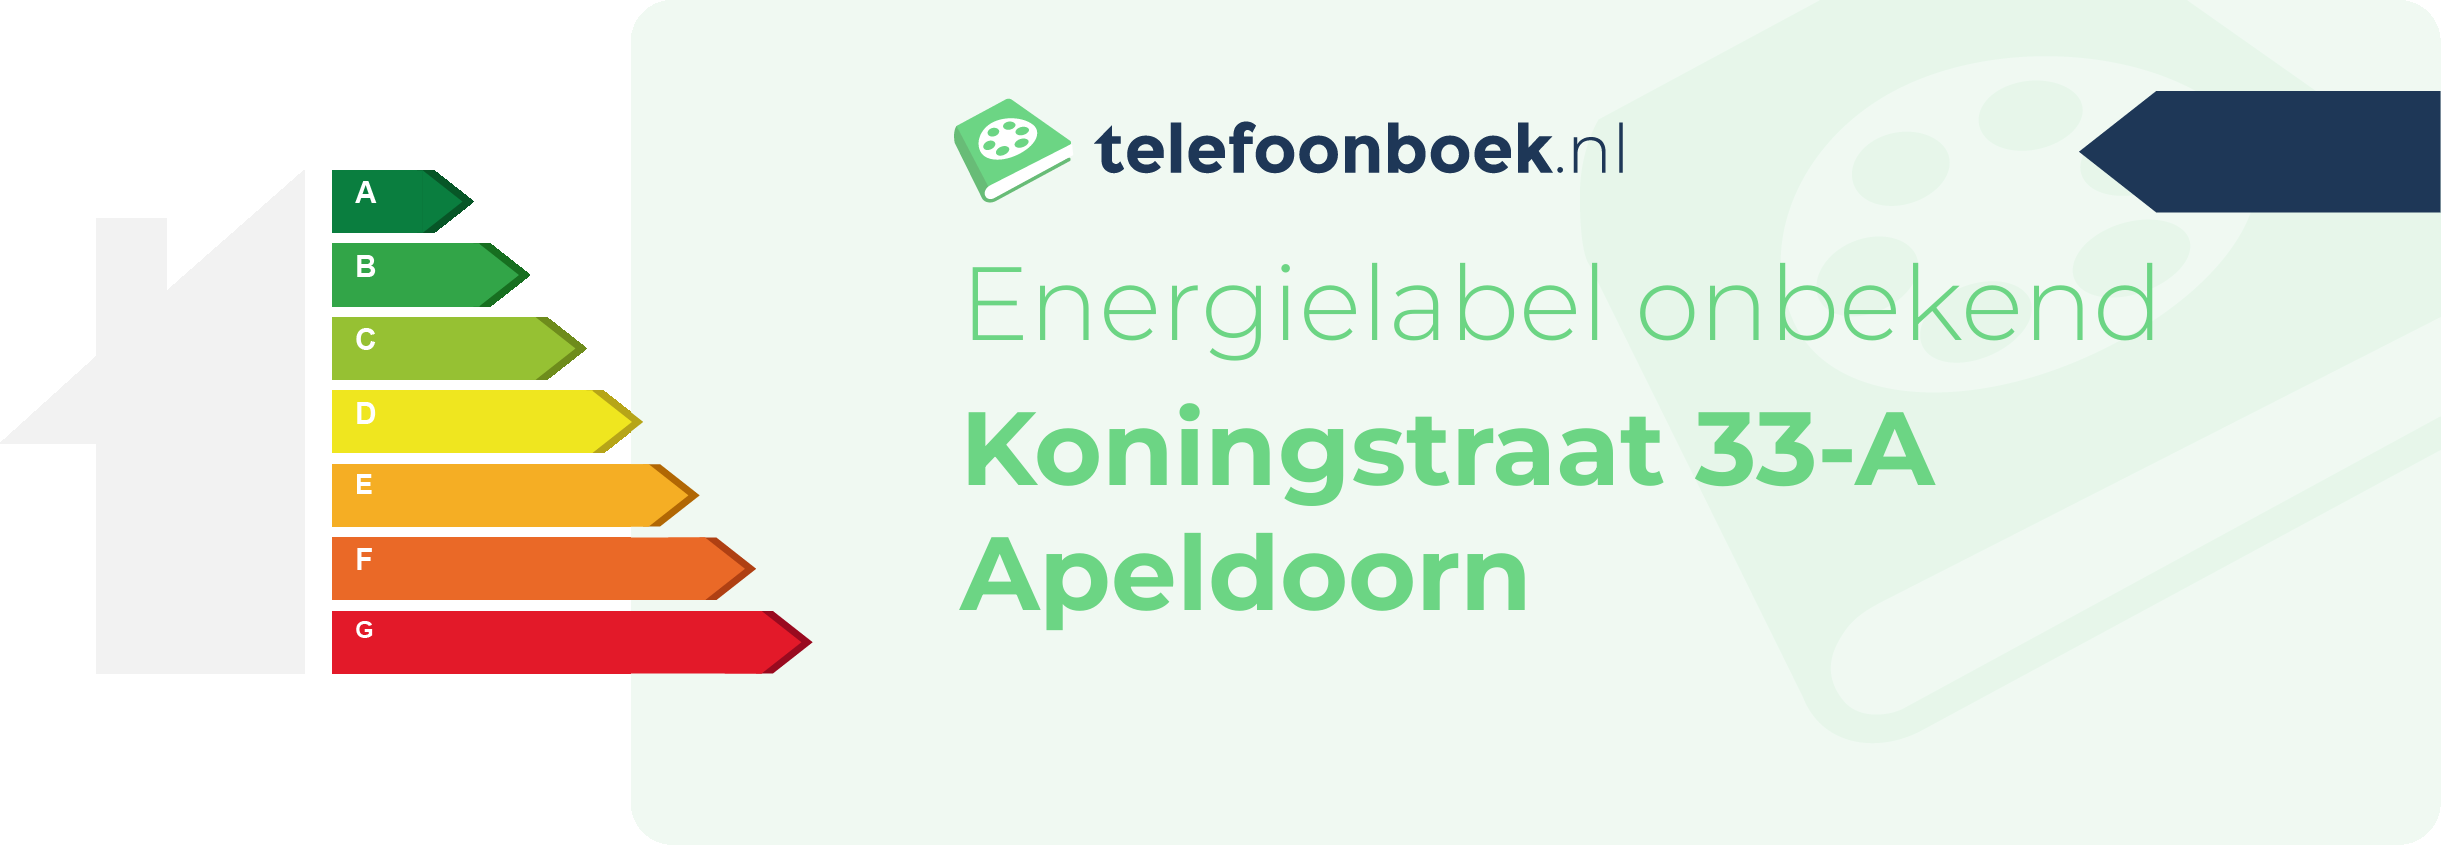 Energielabel Koningstraat 33-A Apeldoorn